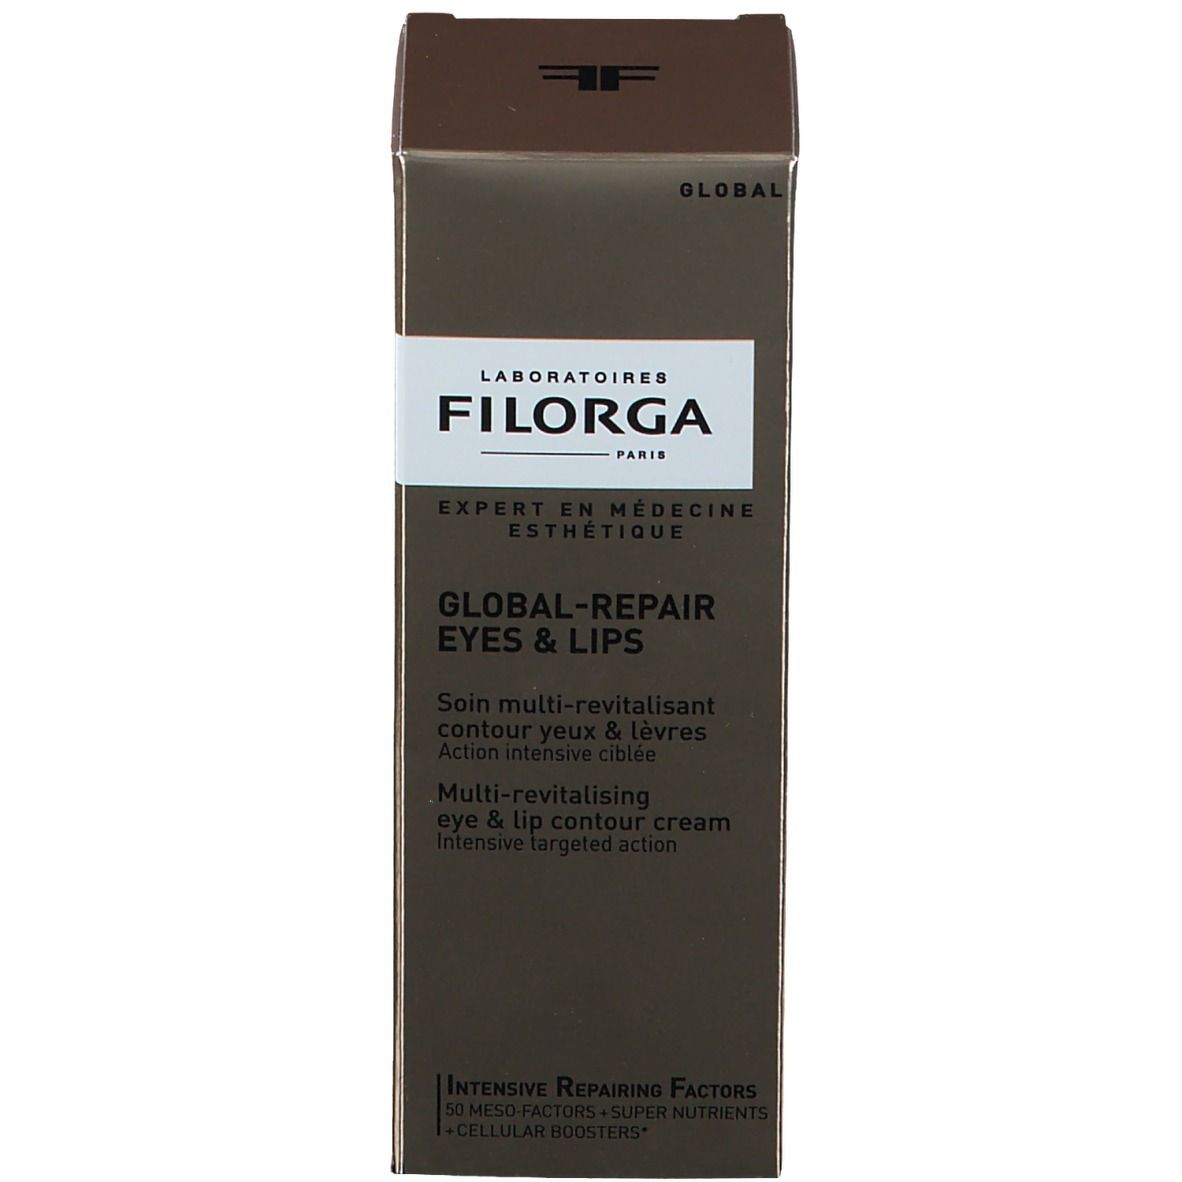 FILORGA Global-Repair Eyes and Lips 1 pz